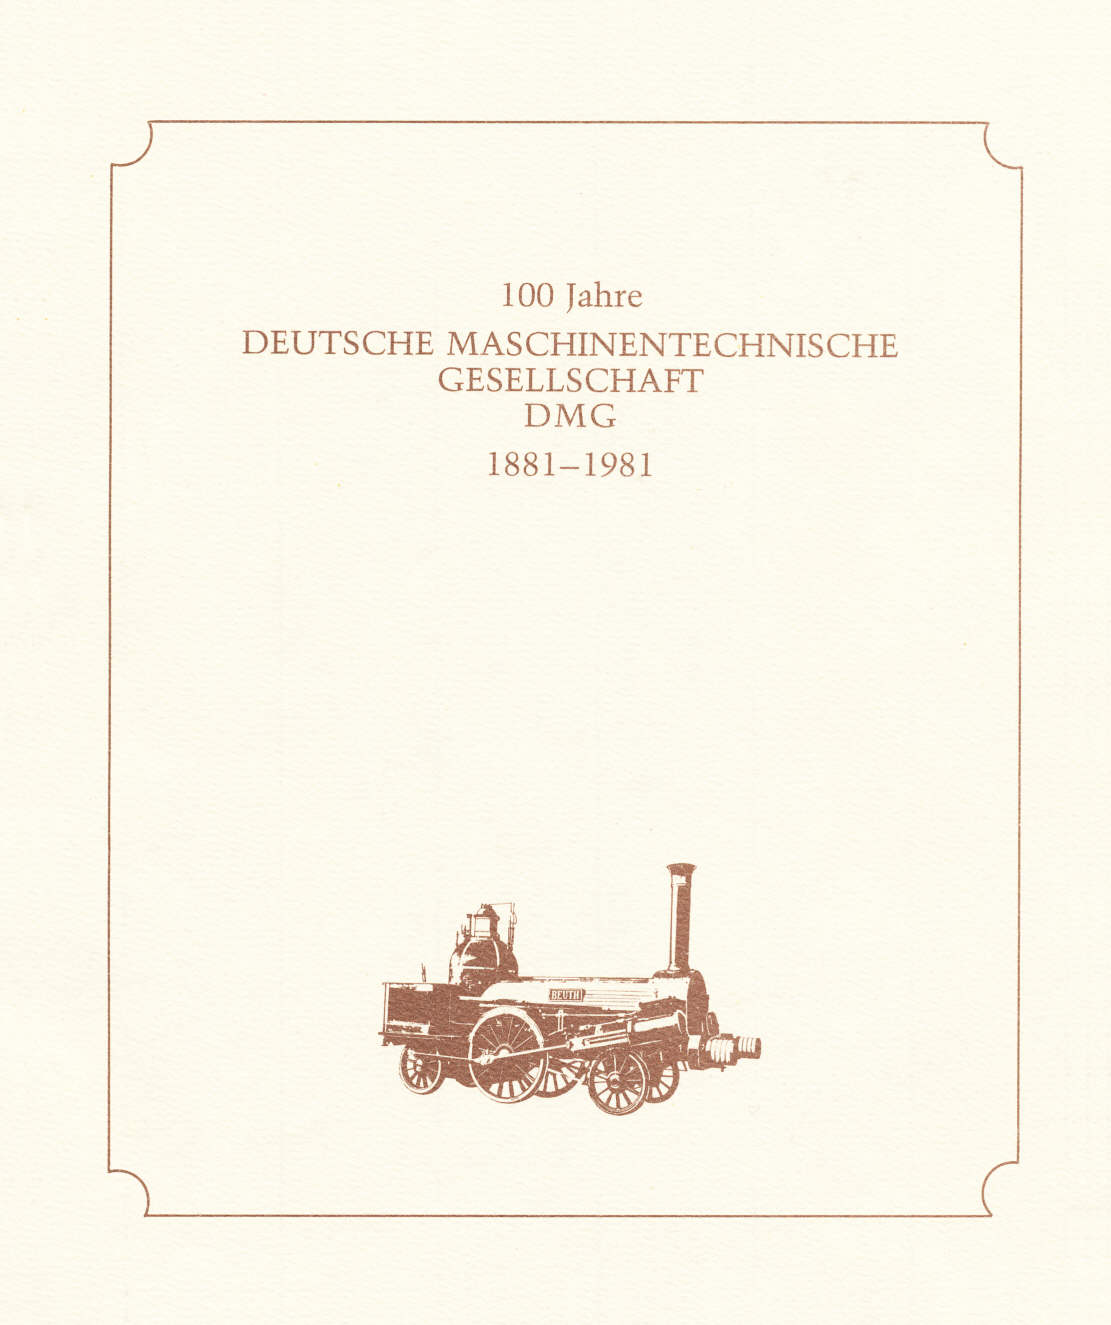 Festschrift 1881 - 1981